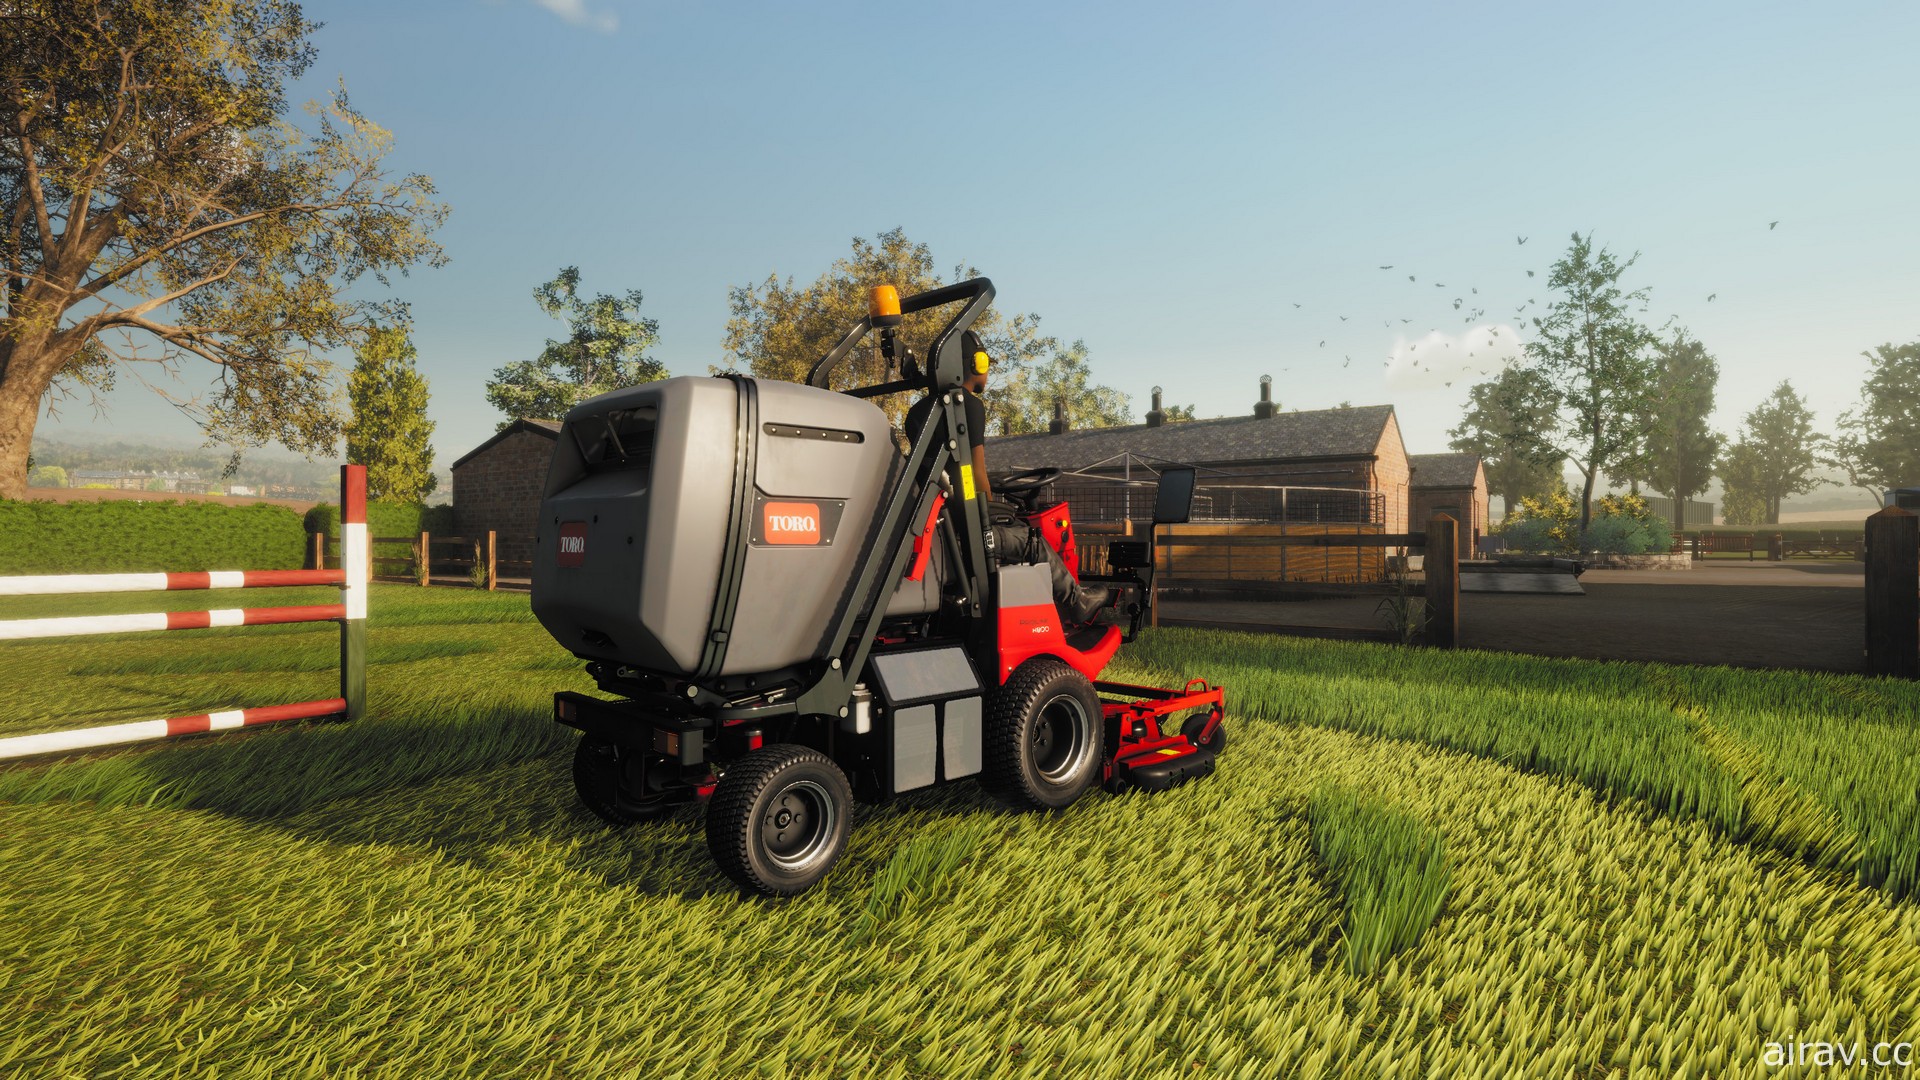 《草坪修剪模擬器》2021 年夏季登場 駕駛各式真實割草機打造自己的草坪修剪事業